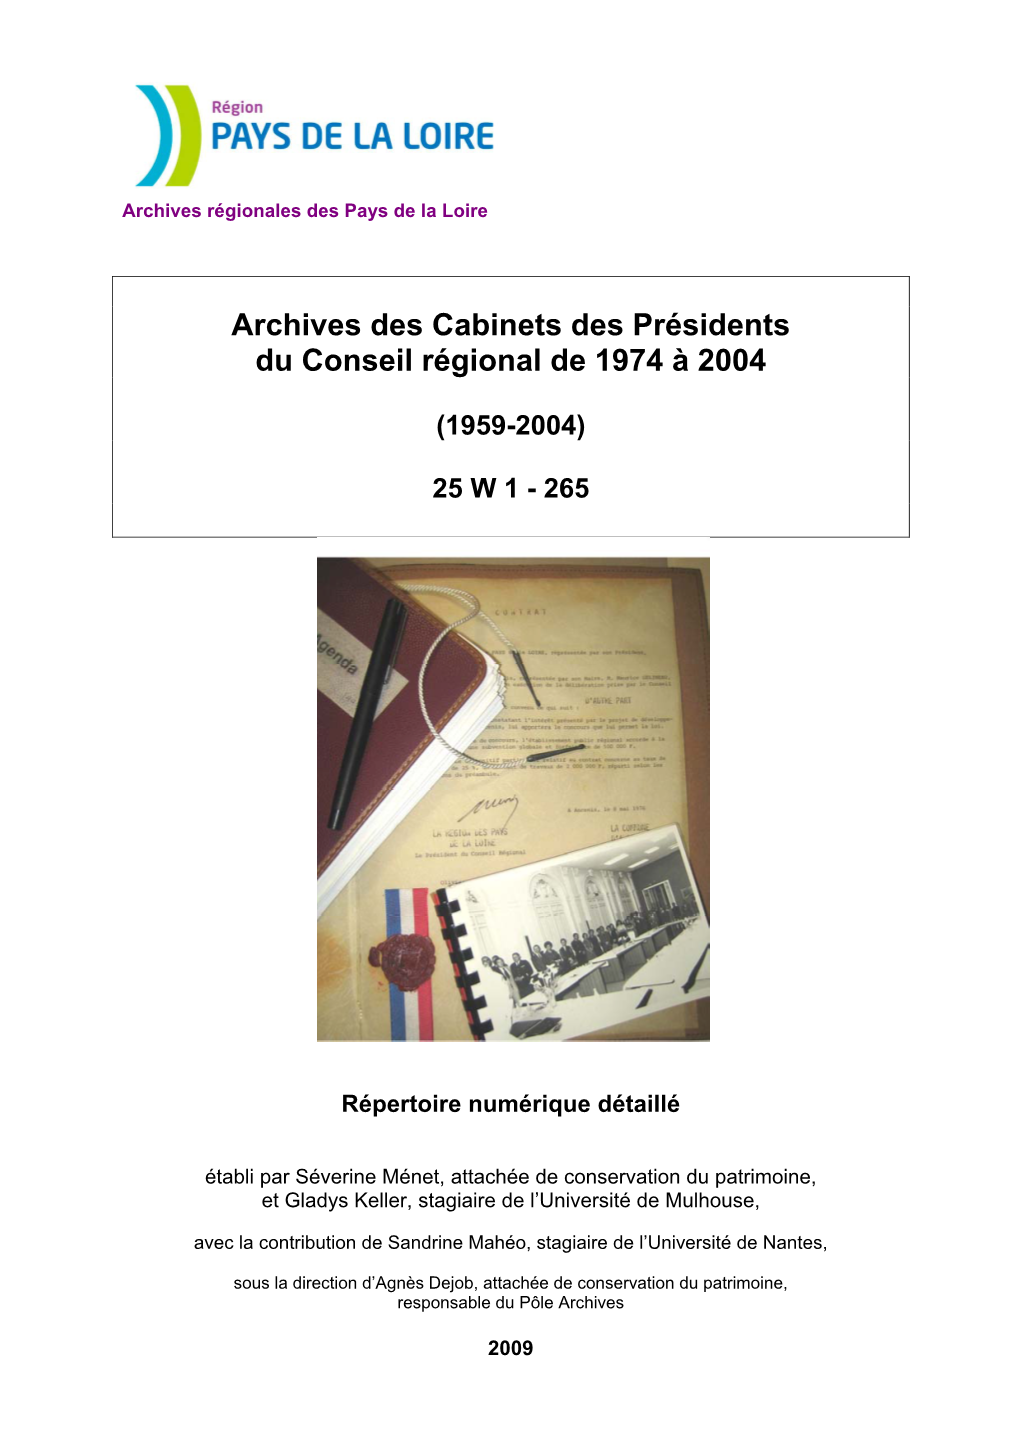 Archives Des Cabinets Des Présidents Du Conseil Régional (1974-2004)